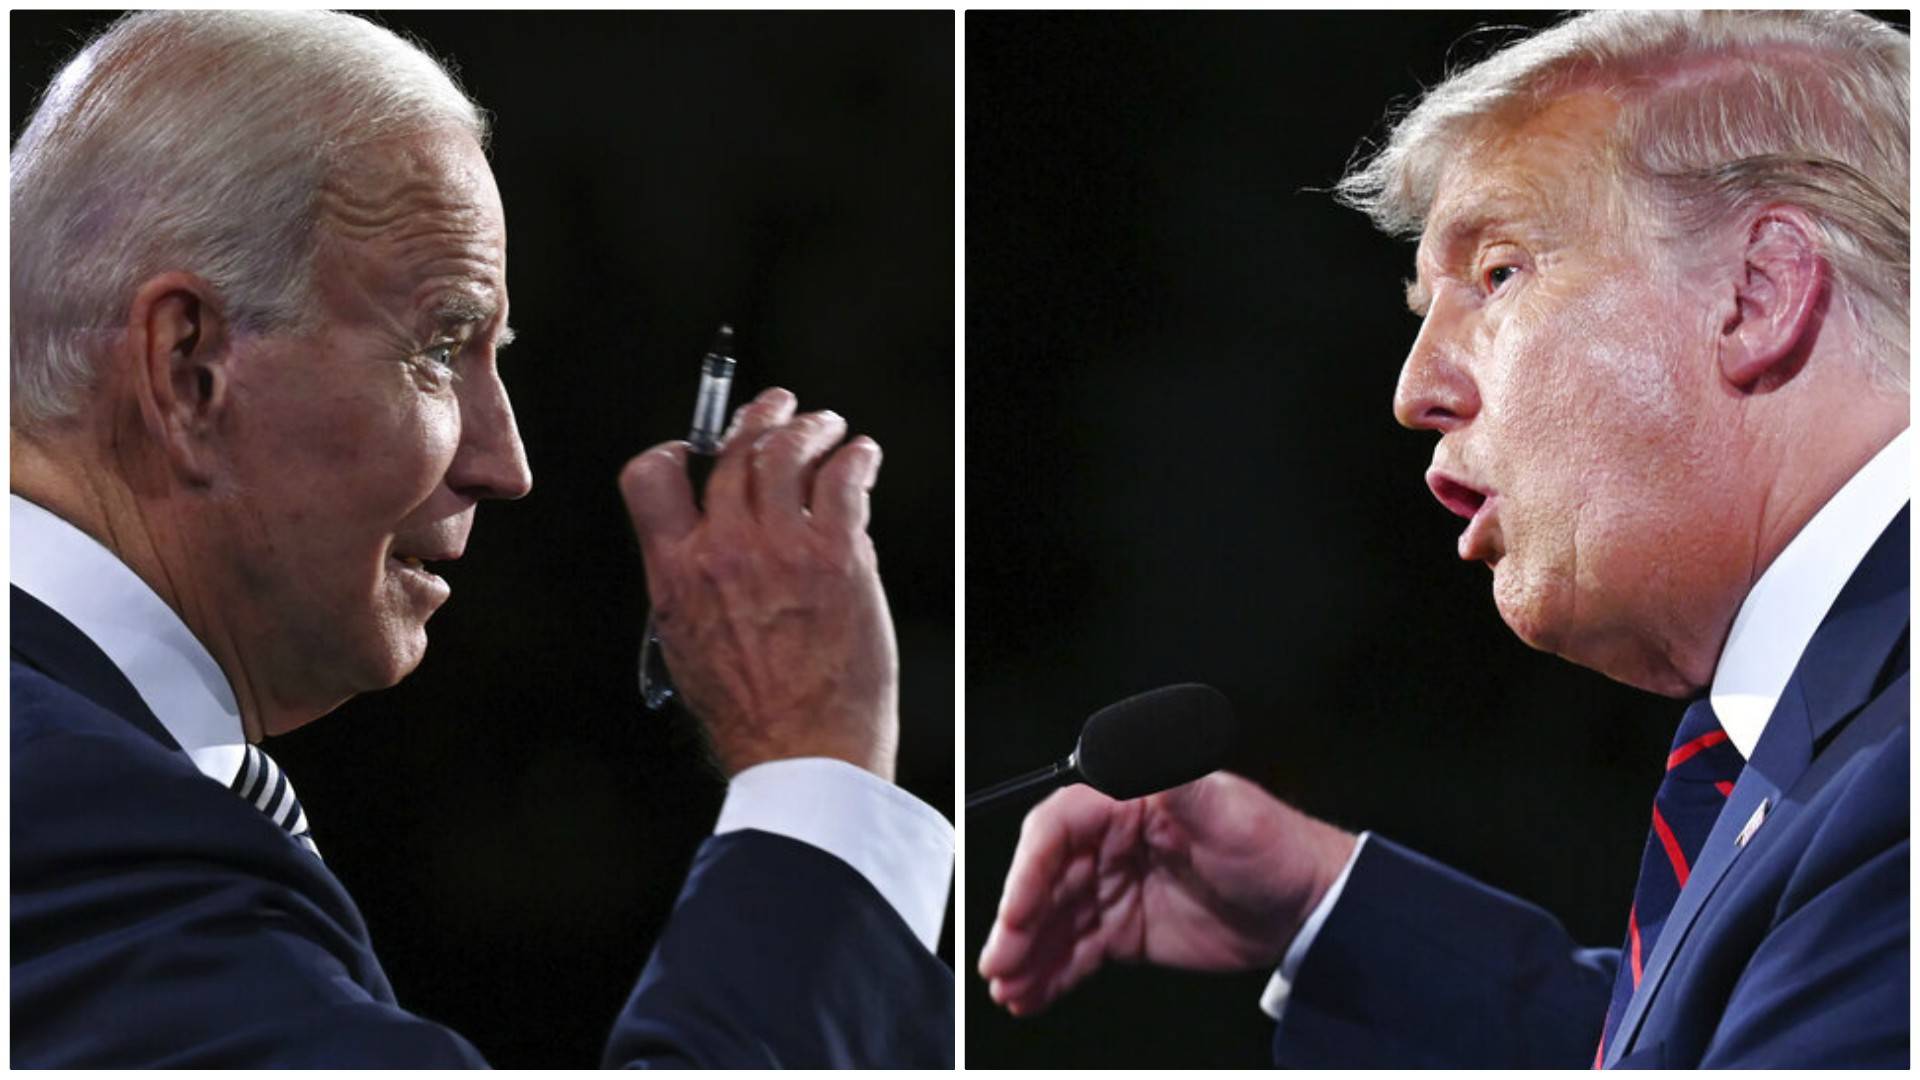 El debate Trump vs Biden: "Una payasada dantesca" - Noticias de Mendoza - Memo